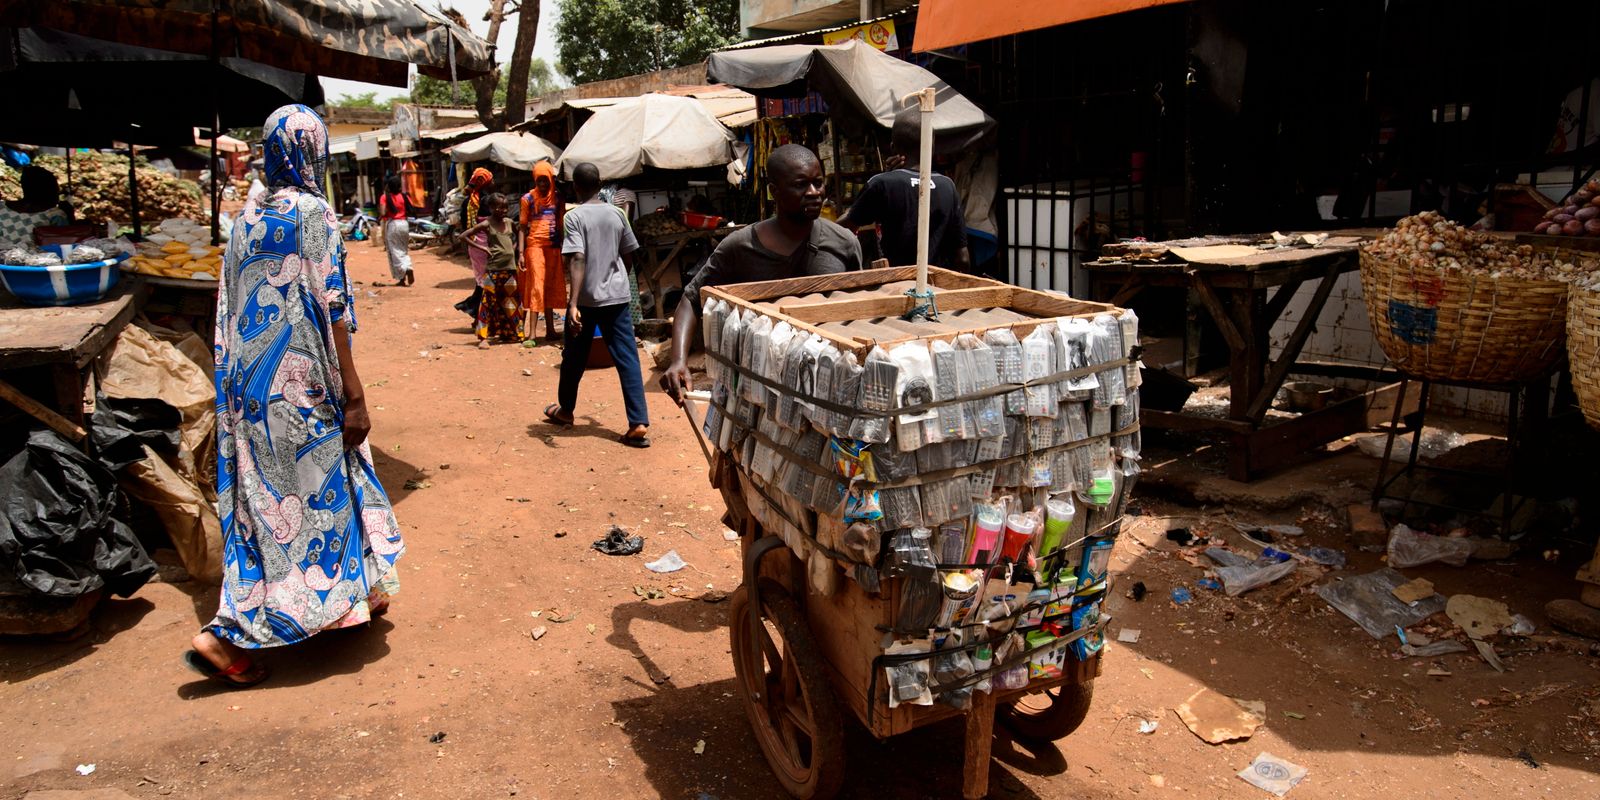 juntan: val i mali först när landet är ”helt stabilt”